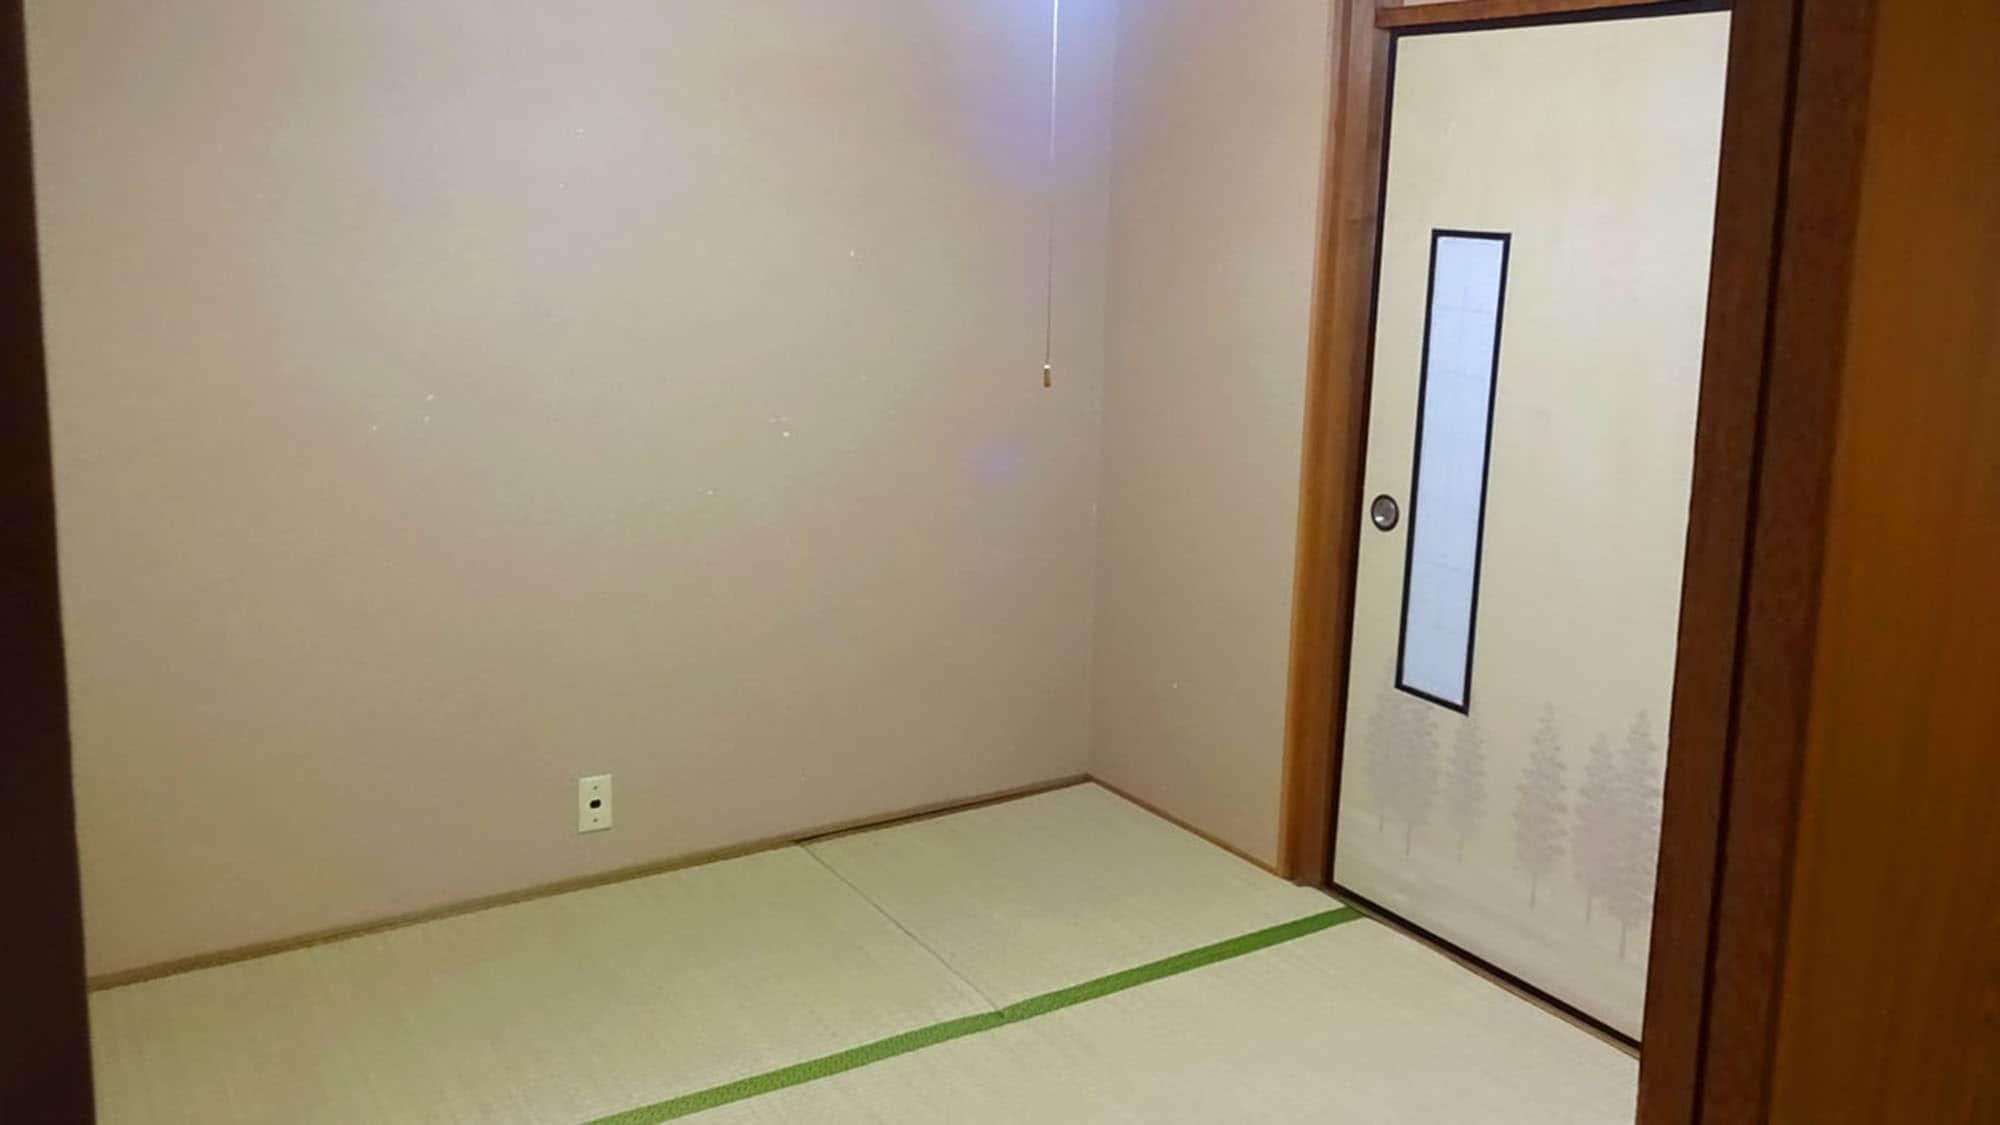 ・ [日式房間4.5榻榻米示例]：僅限1人的房間